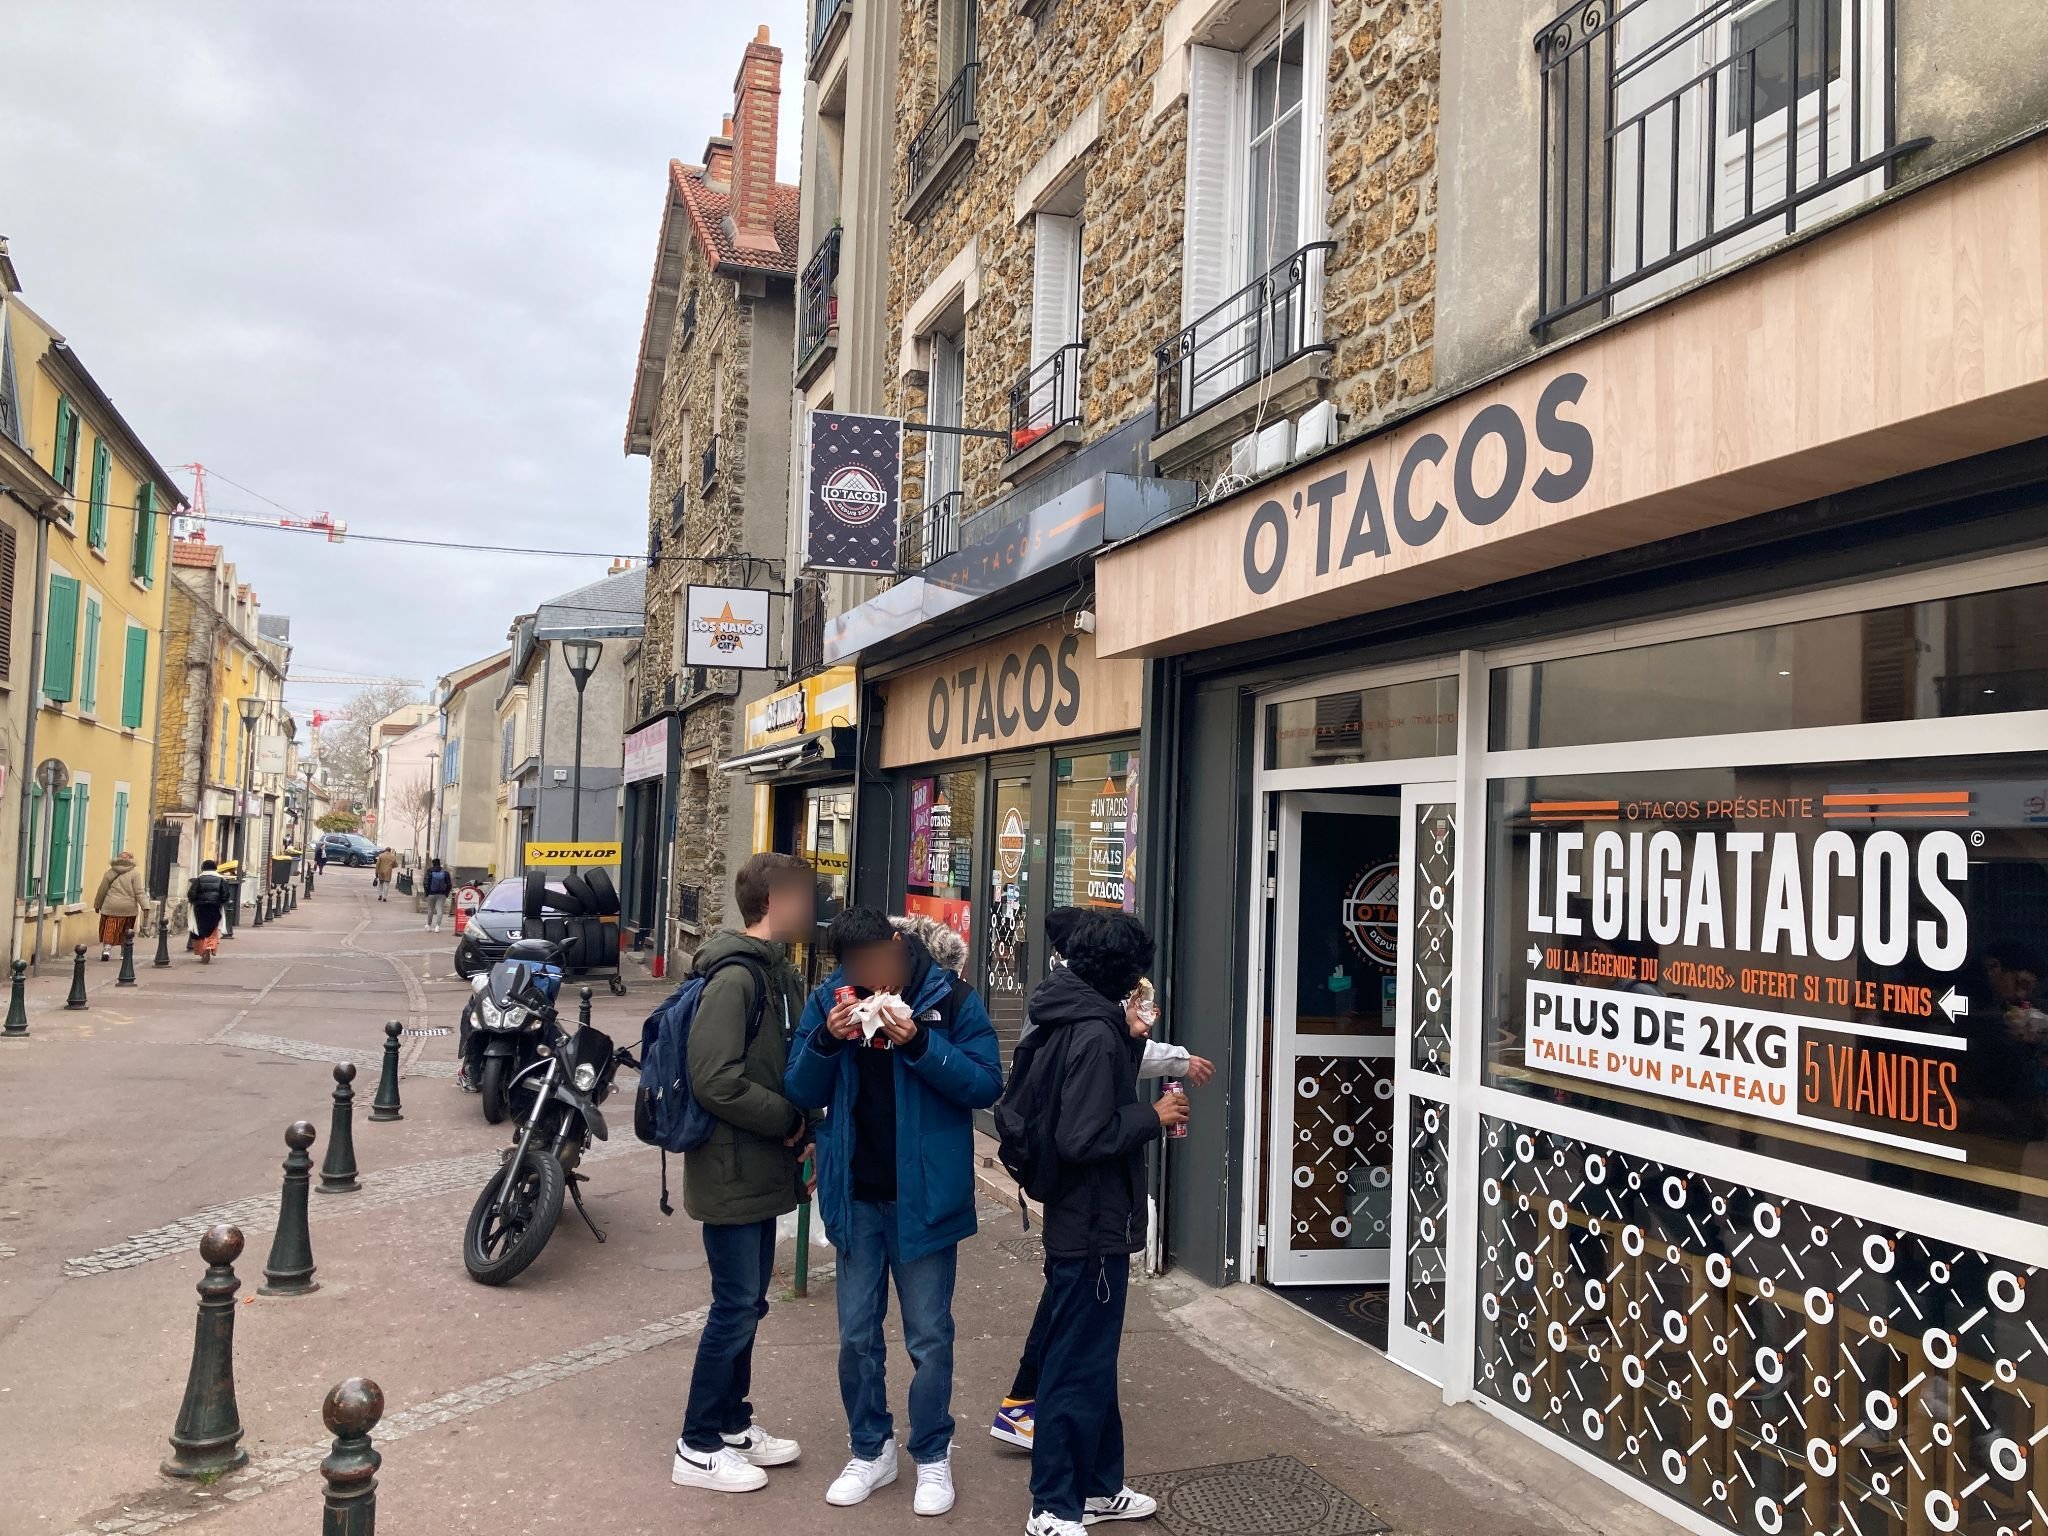 Savigny-sur-Orge (Essonne), le 7 mars. En centre-ville, la rue Grande compte cinq fast-foods sur 200 m, des enseignes de tacos prisées des jeunes. LP/Bartolomé Simon